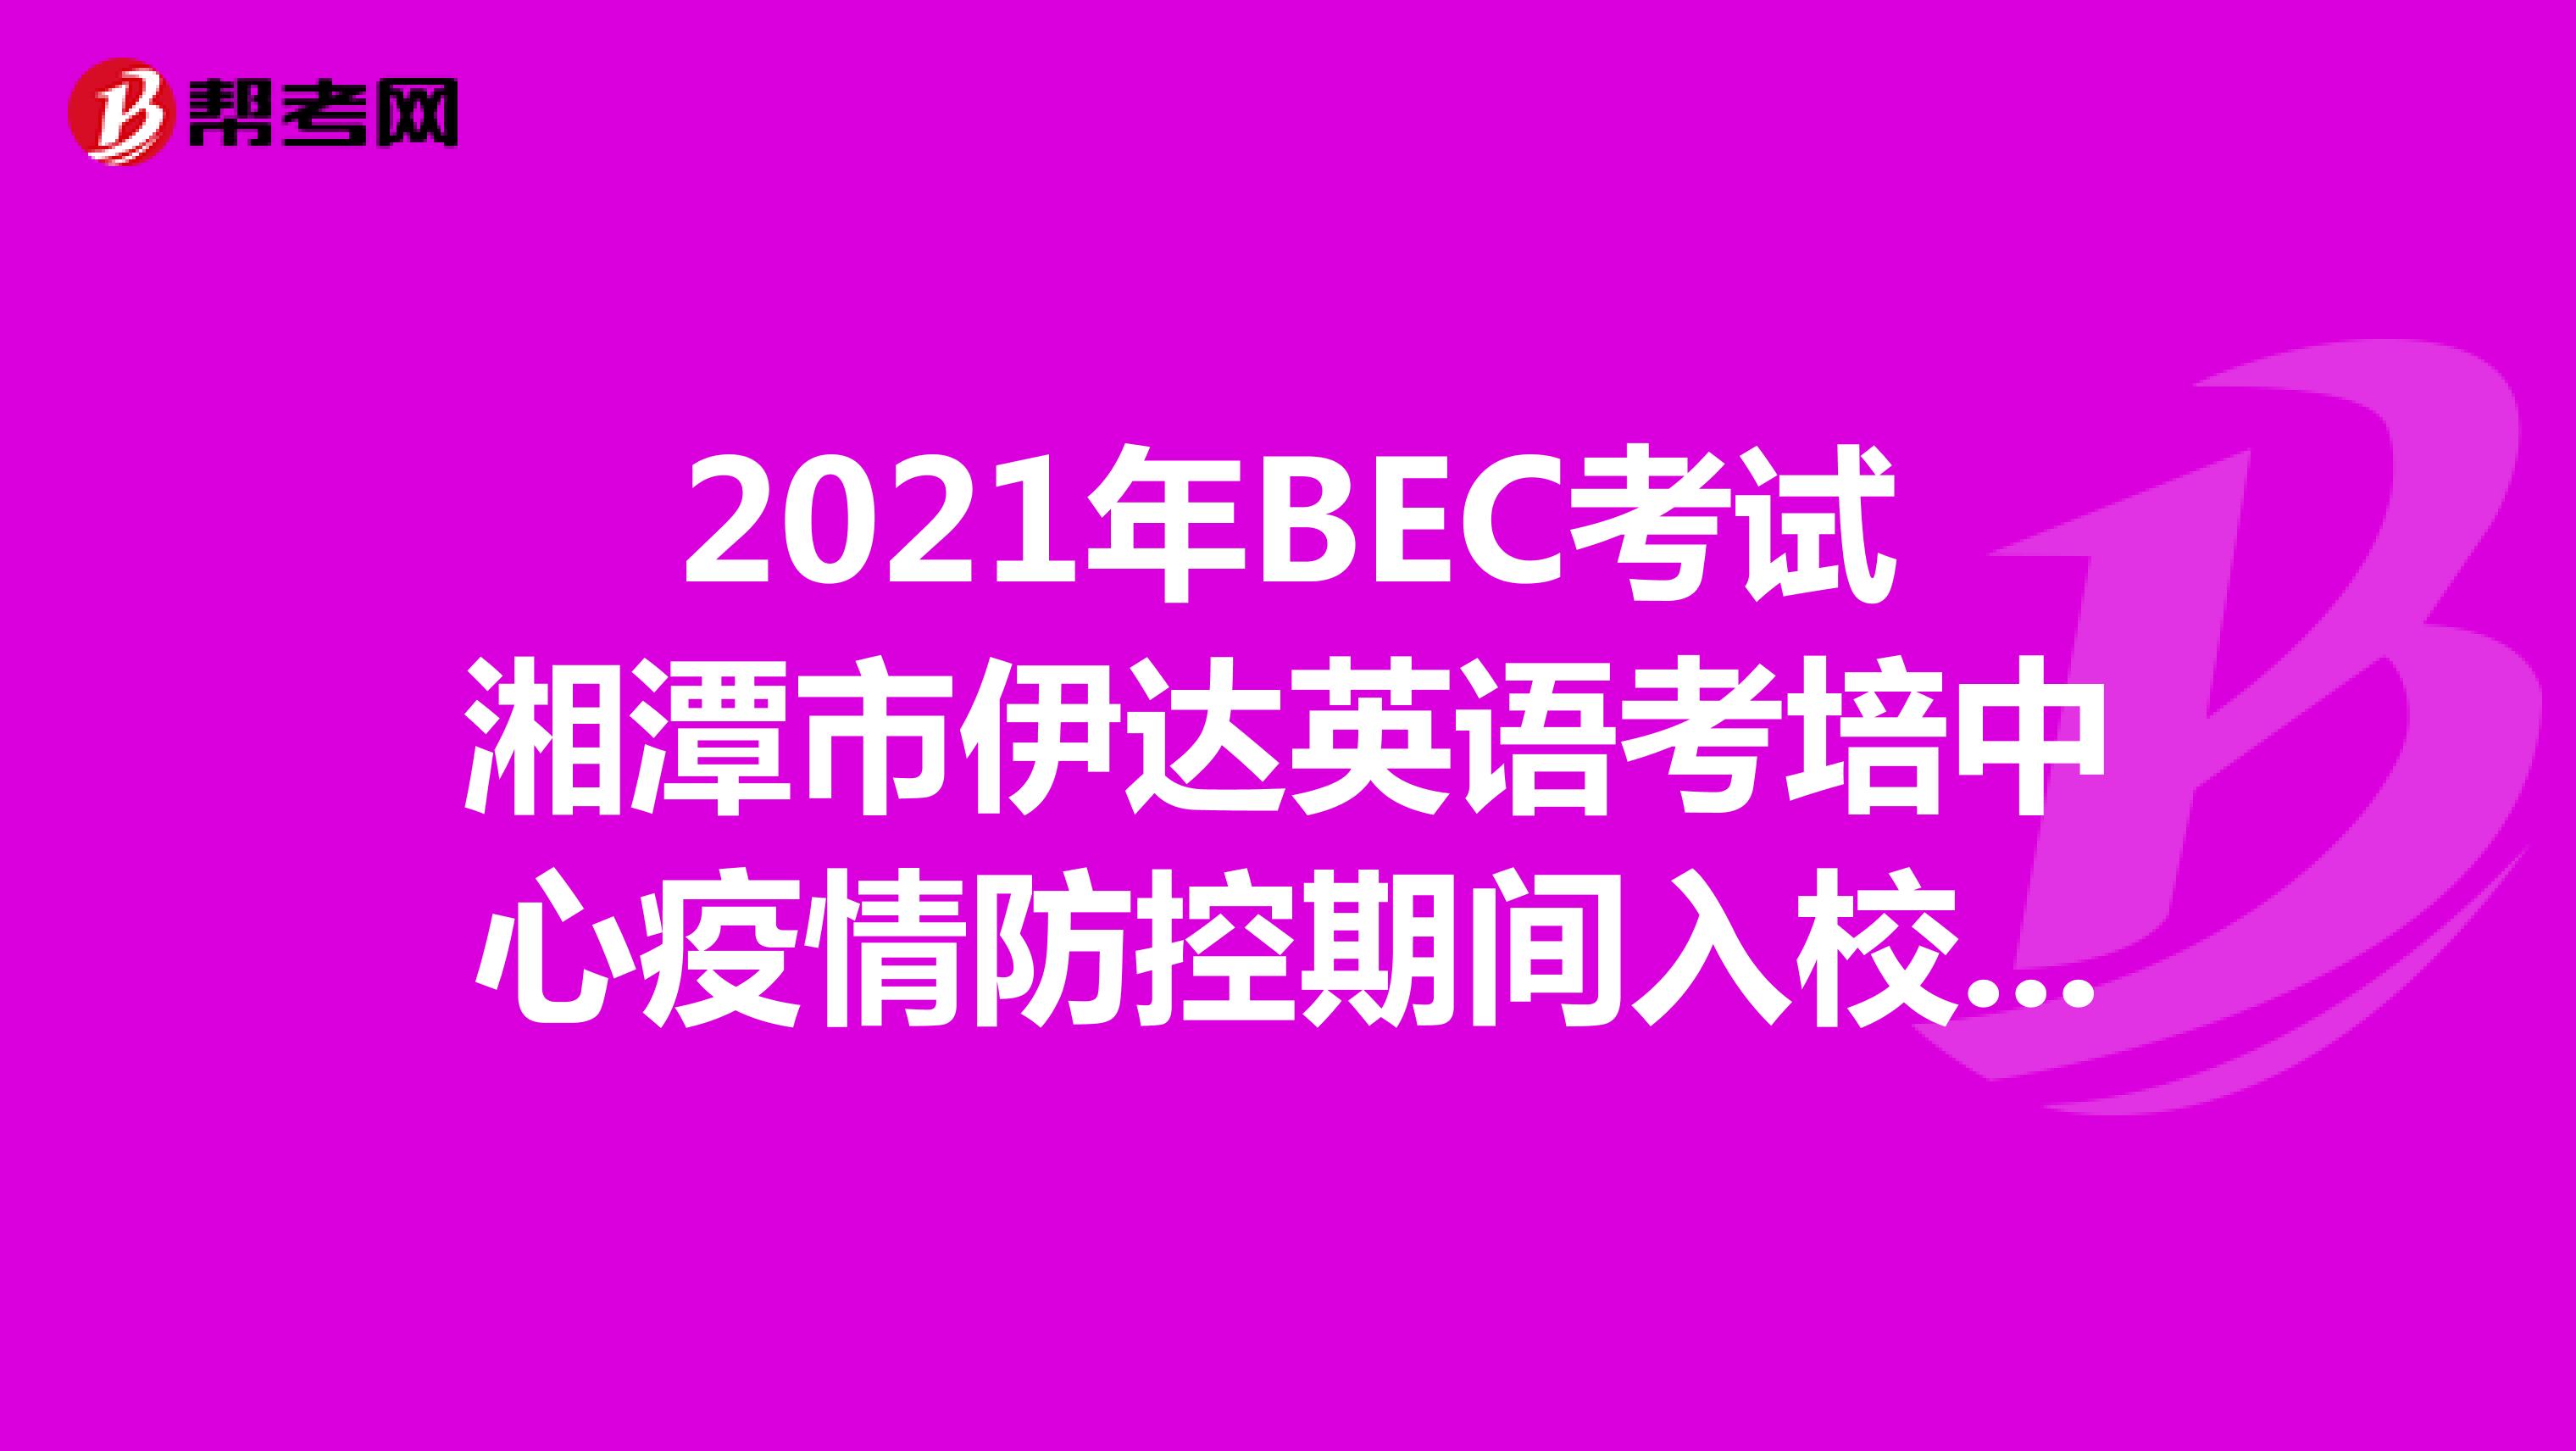 2021年BEC考试湘潭市伊达英语考培中心疫情防控期间入校要求